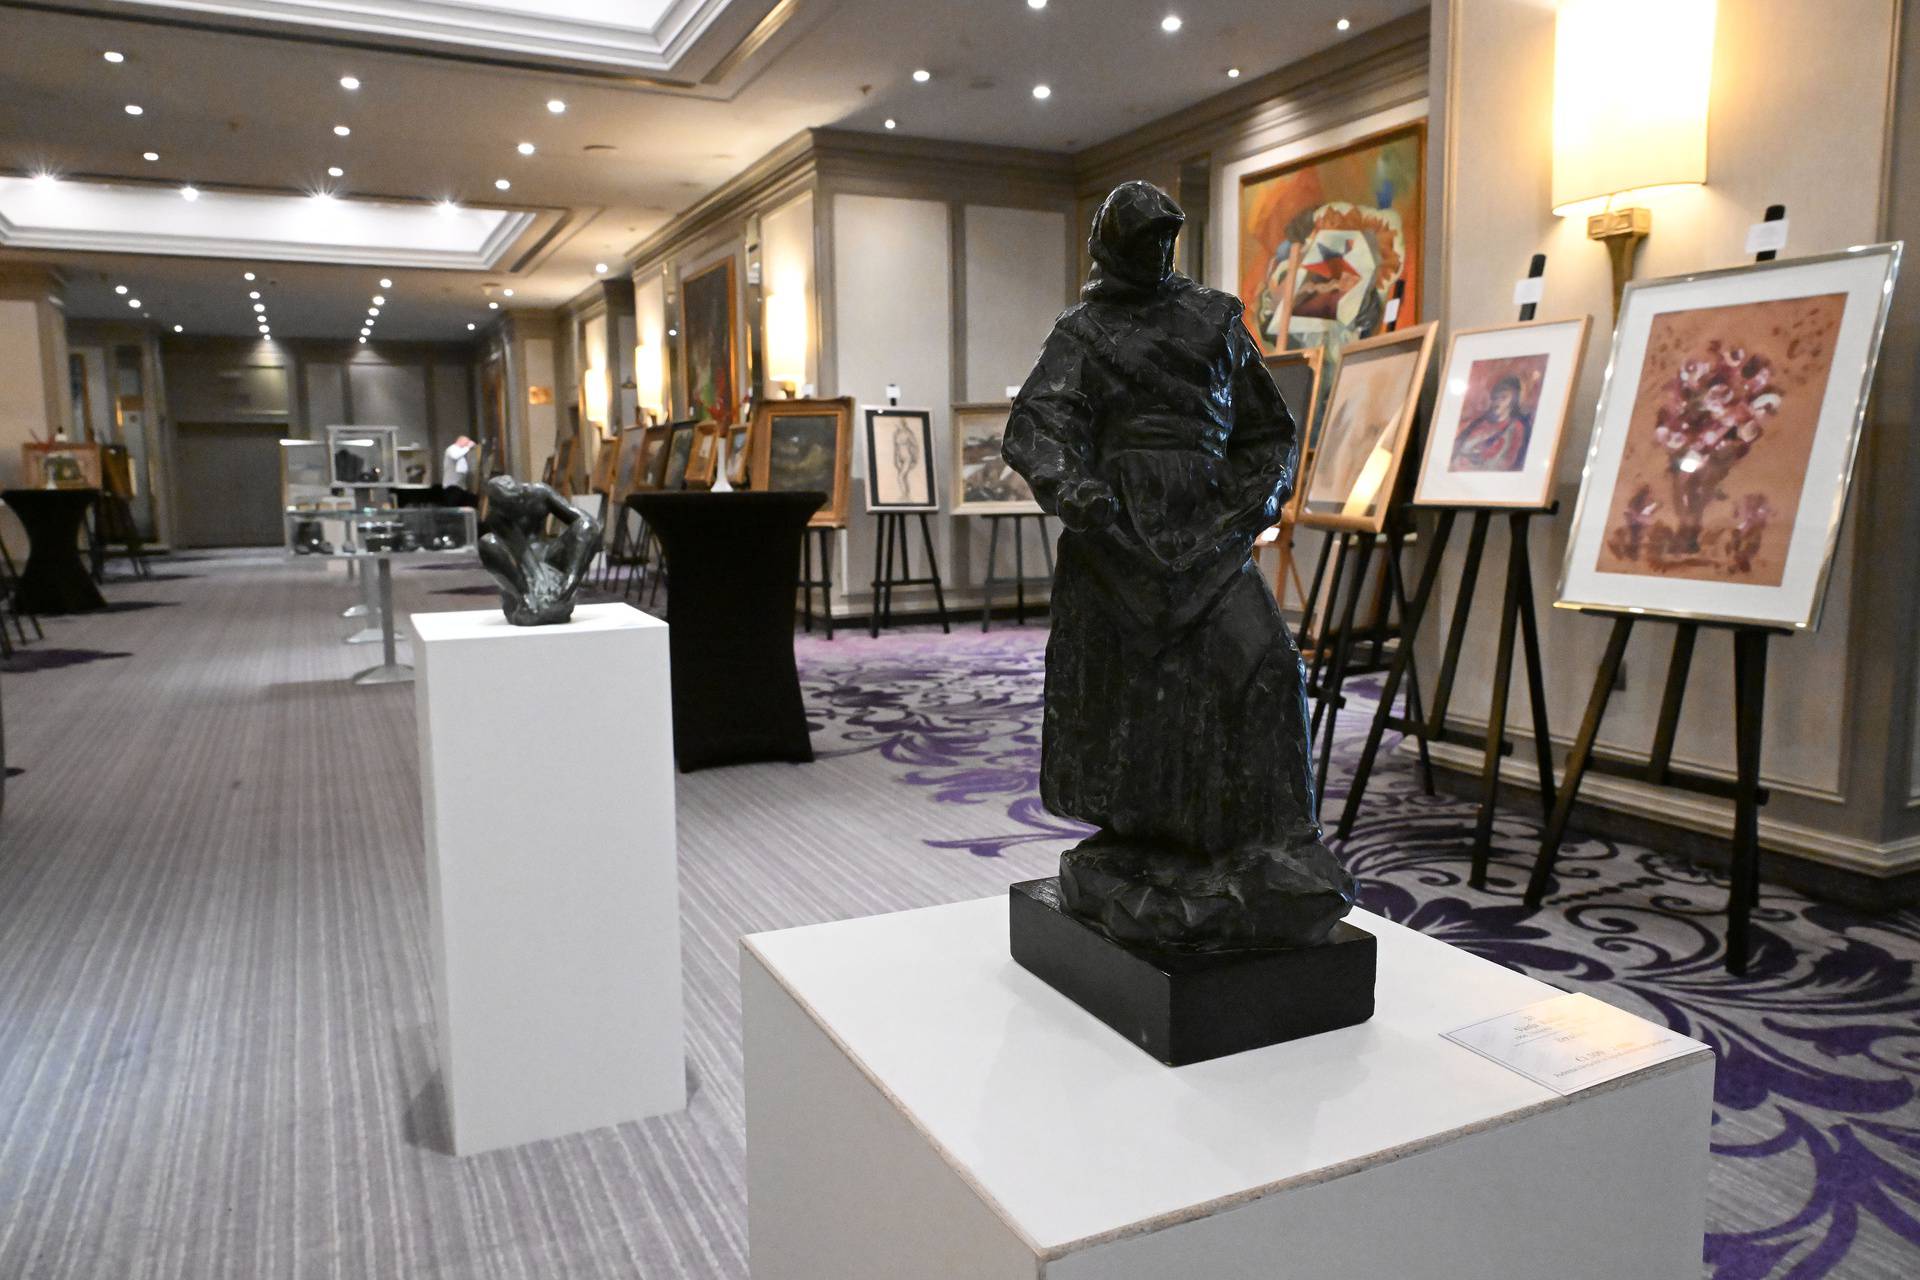 Zagreb: U Hotelu Sheraton izložena su razna umjetnička djela uoči Zimske aukcije aukcijske kuće Artmark Croatia